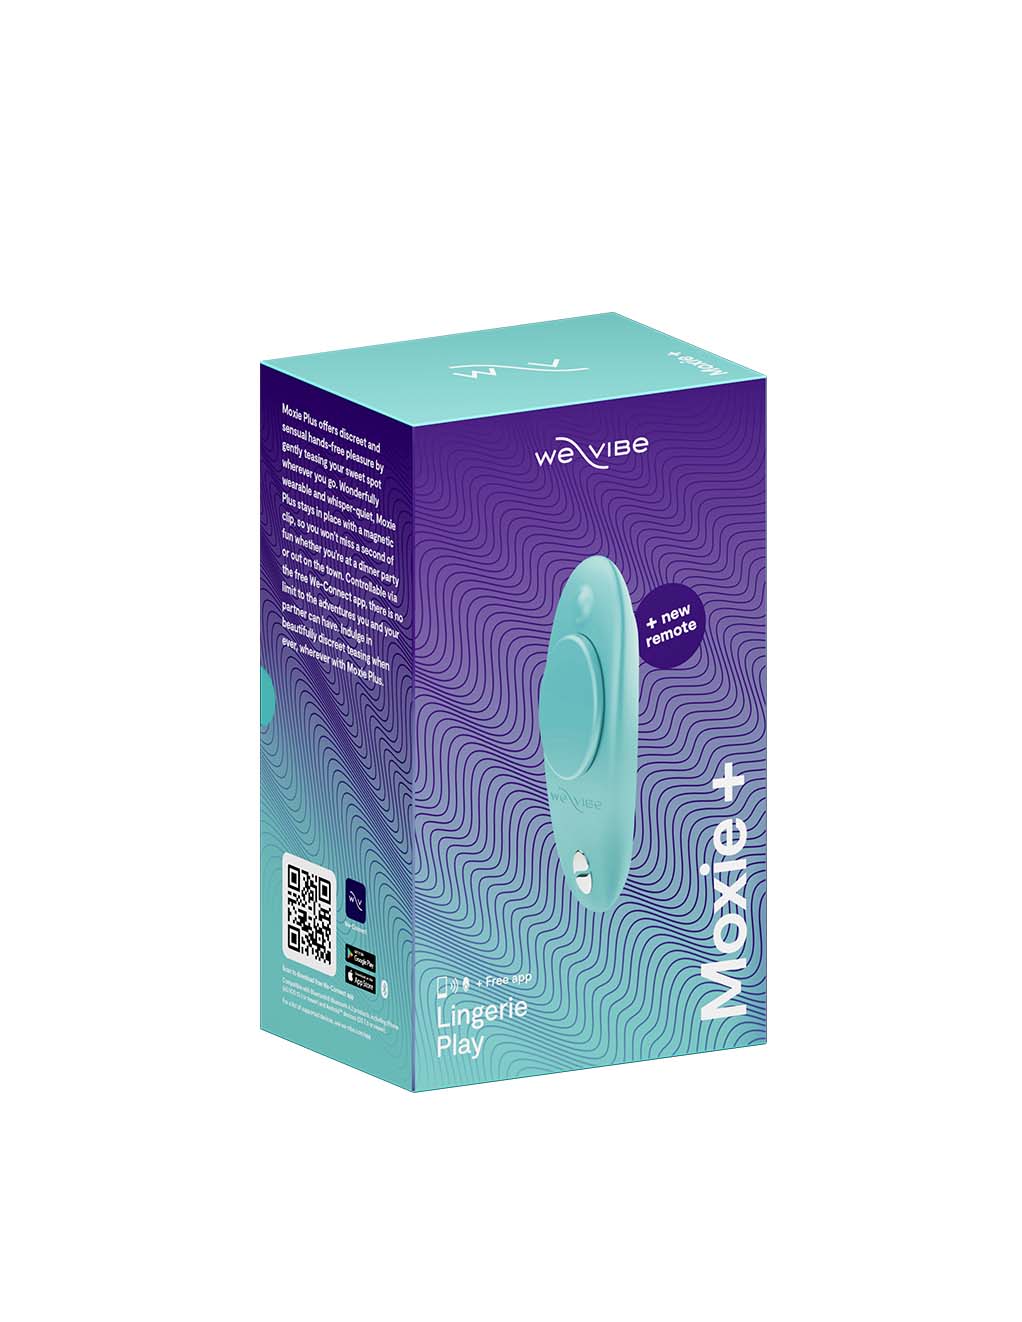 We Vibe Moxie Plus- Aqua Box